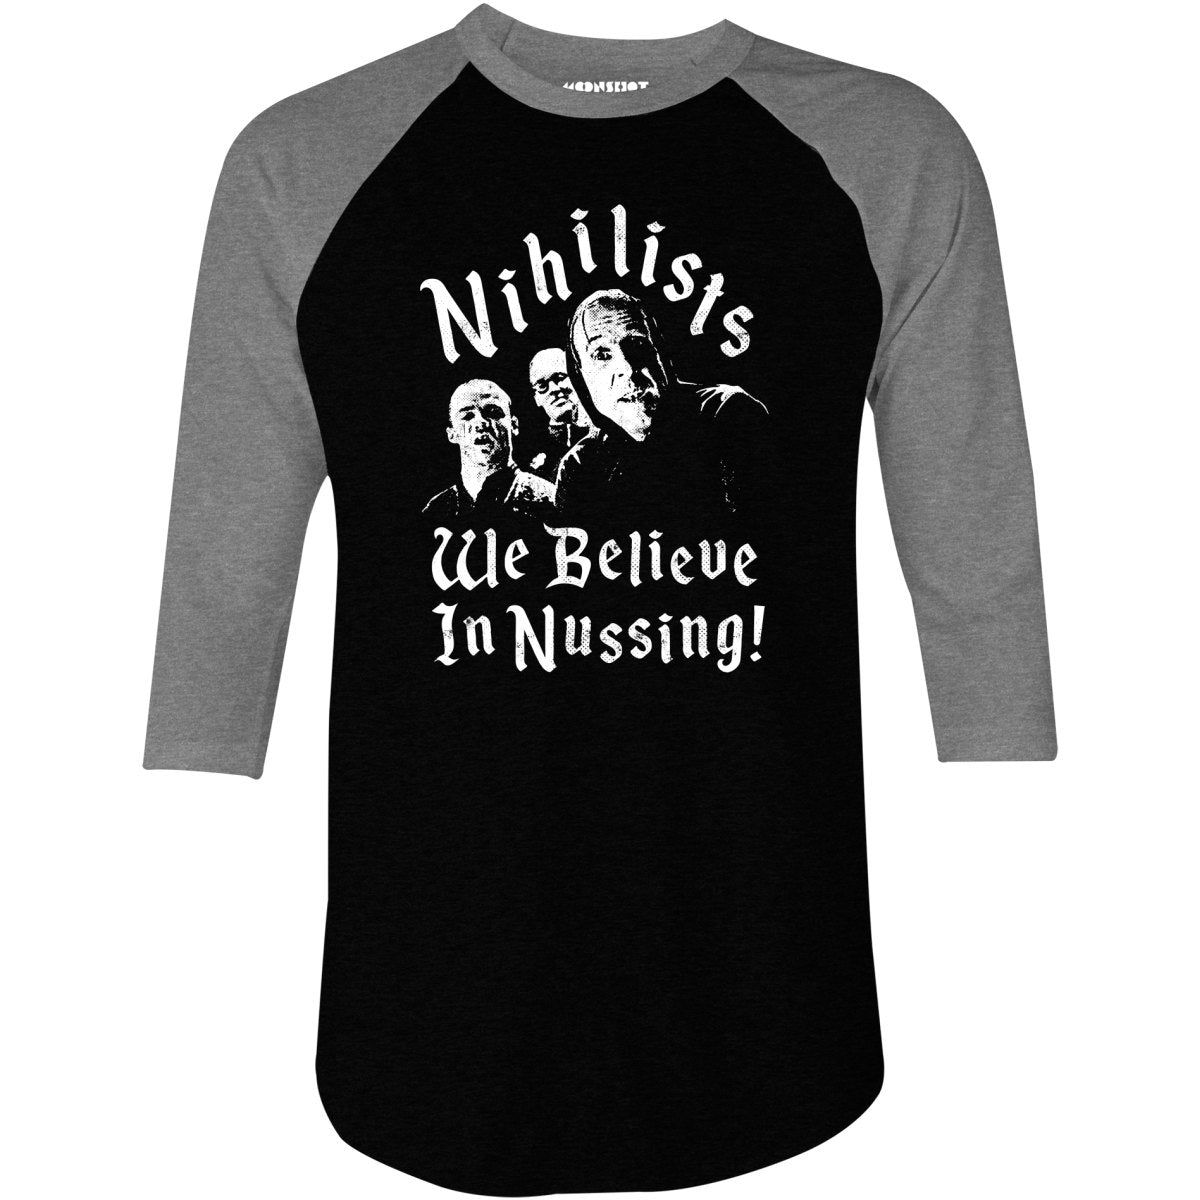 Nihilists - We Believe in Nussing - 3/4 Sleeve Raglan T-Shirt